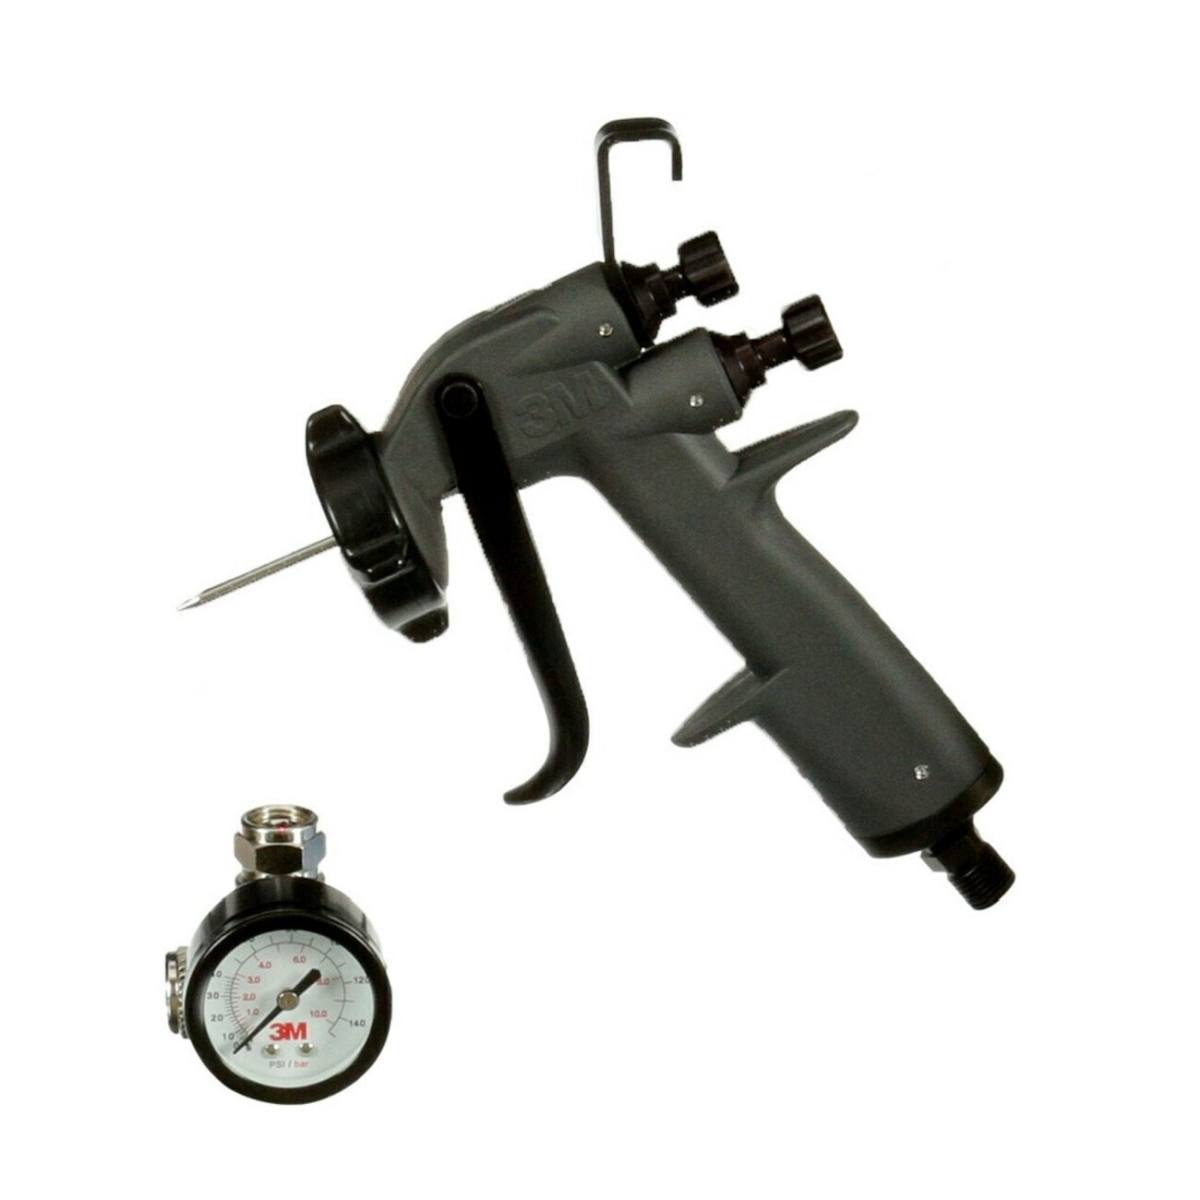 3M Pistola pulverizadora de alto rendimiento, pistola pulverizadora y válvula para el control del caudal de aire